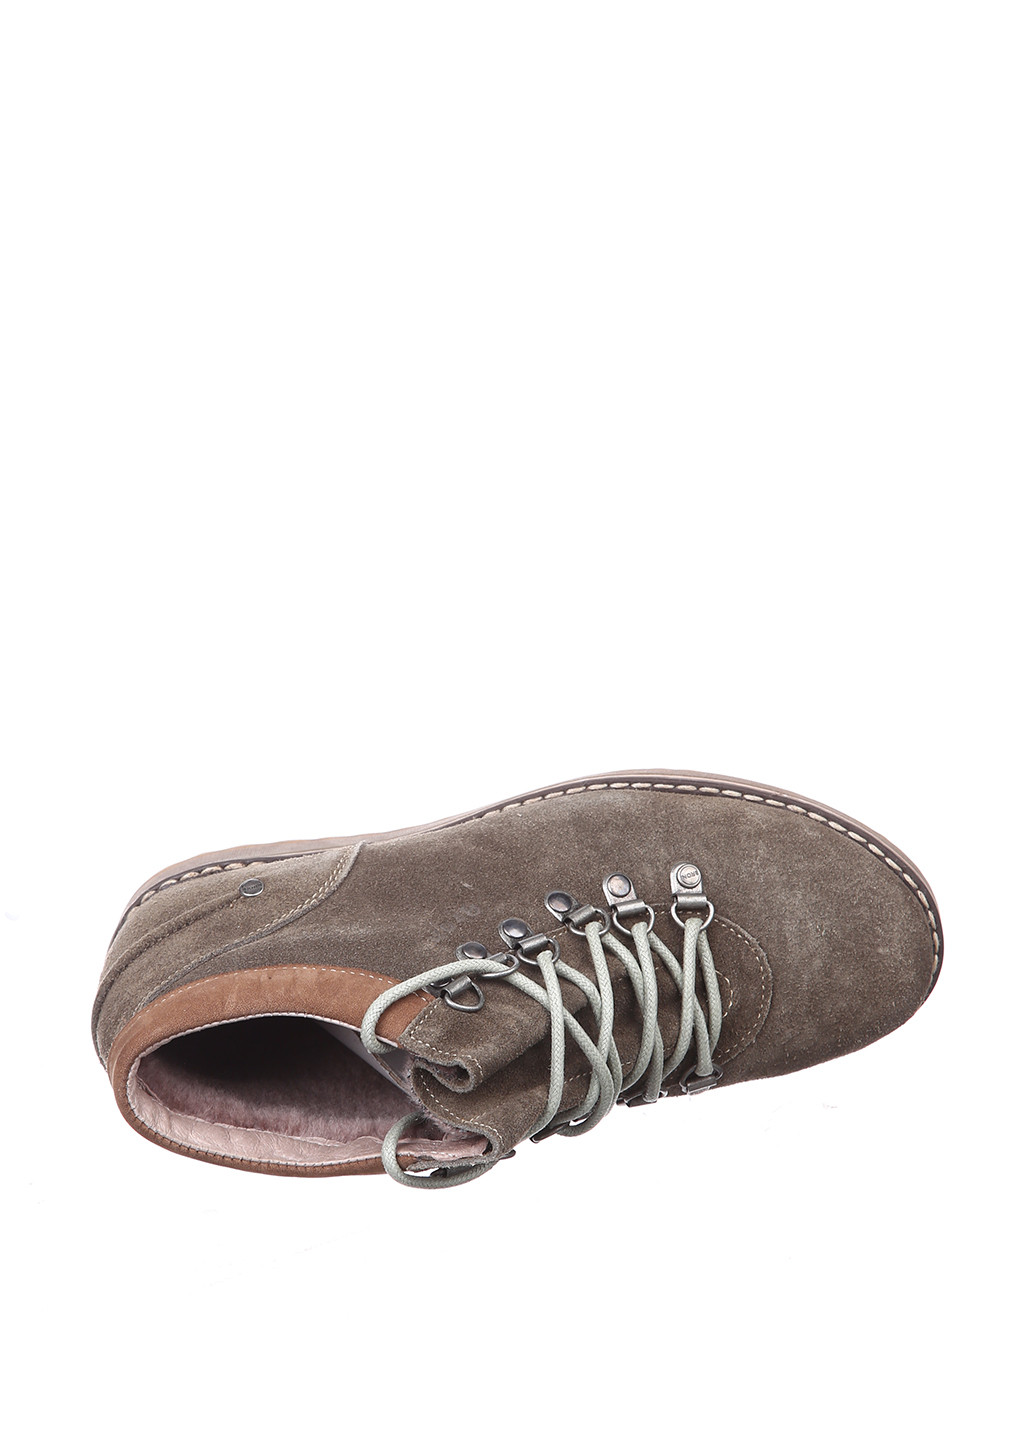 Осенние ботинки хайкеры Broni без декора из натуральной замши